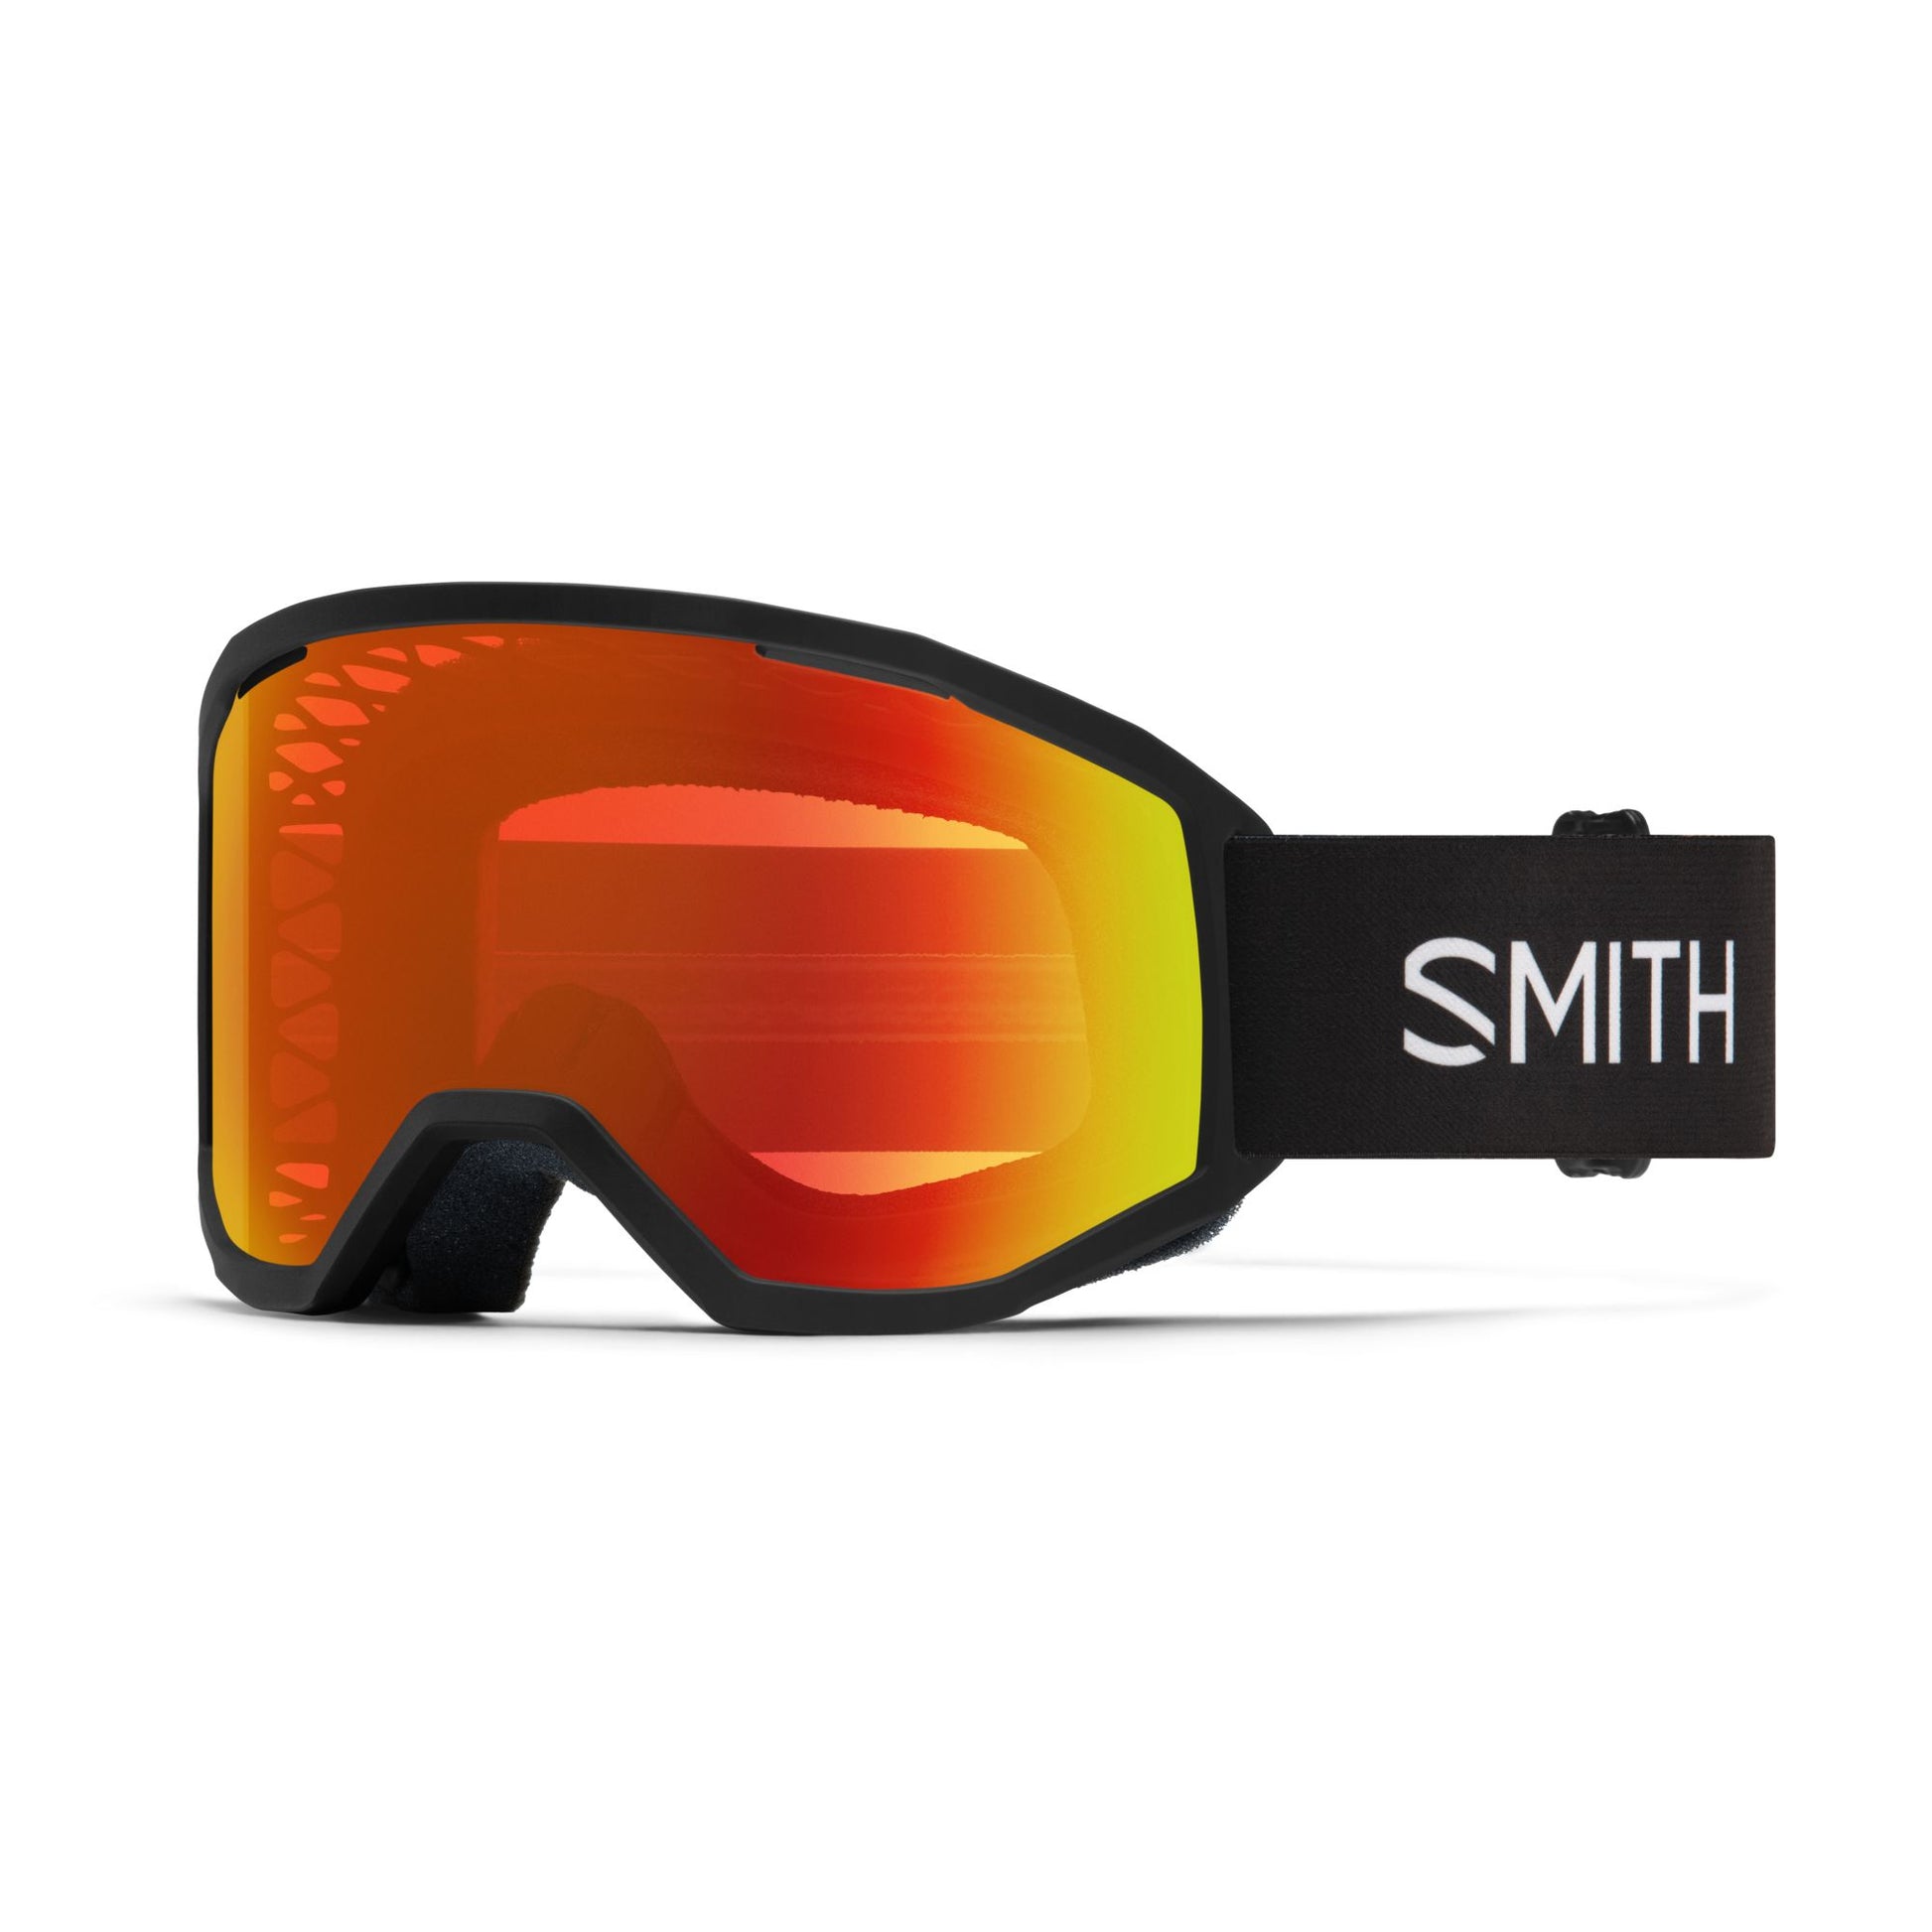 Smith Loam MTB Goggles Black / Red Mirror Bike Goggles